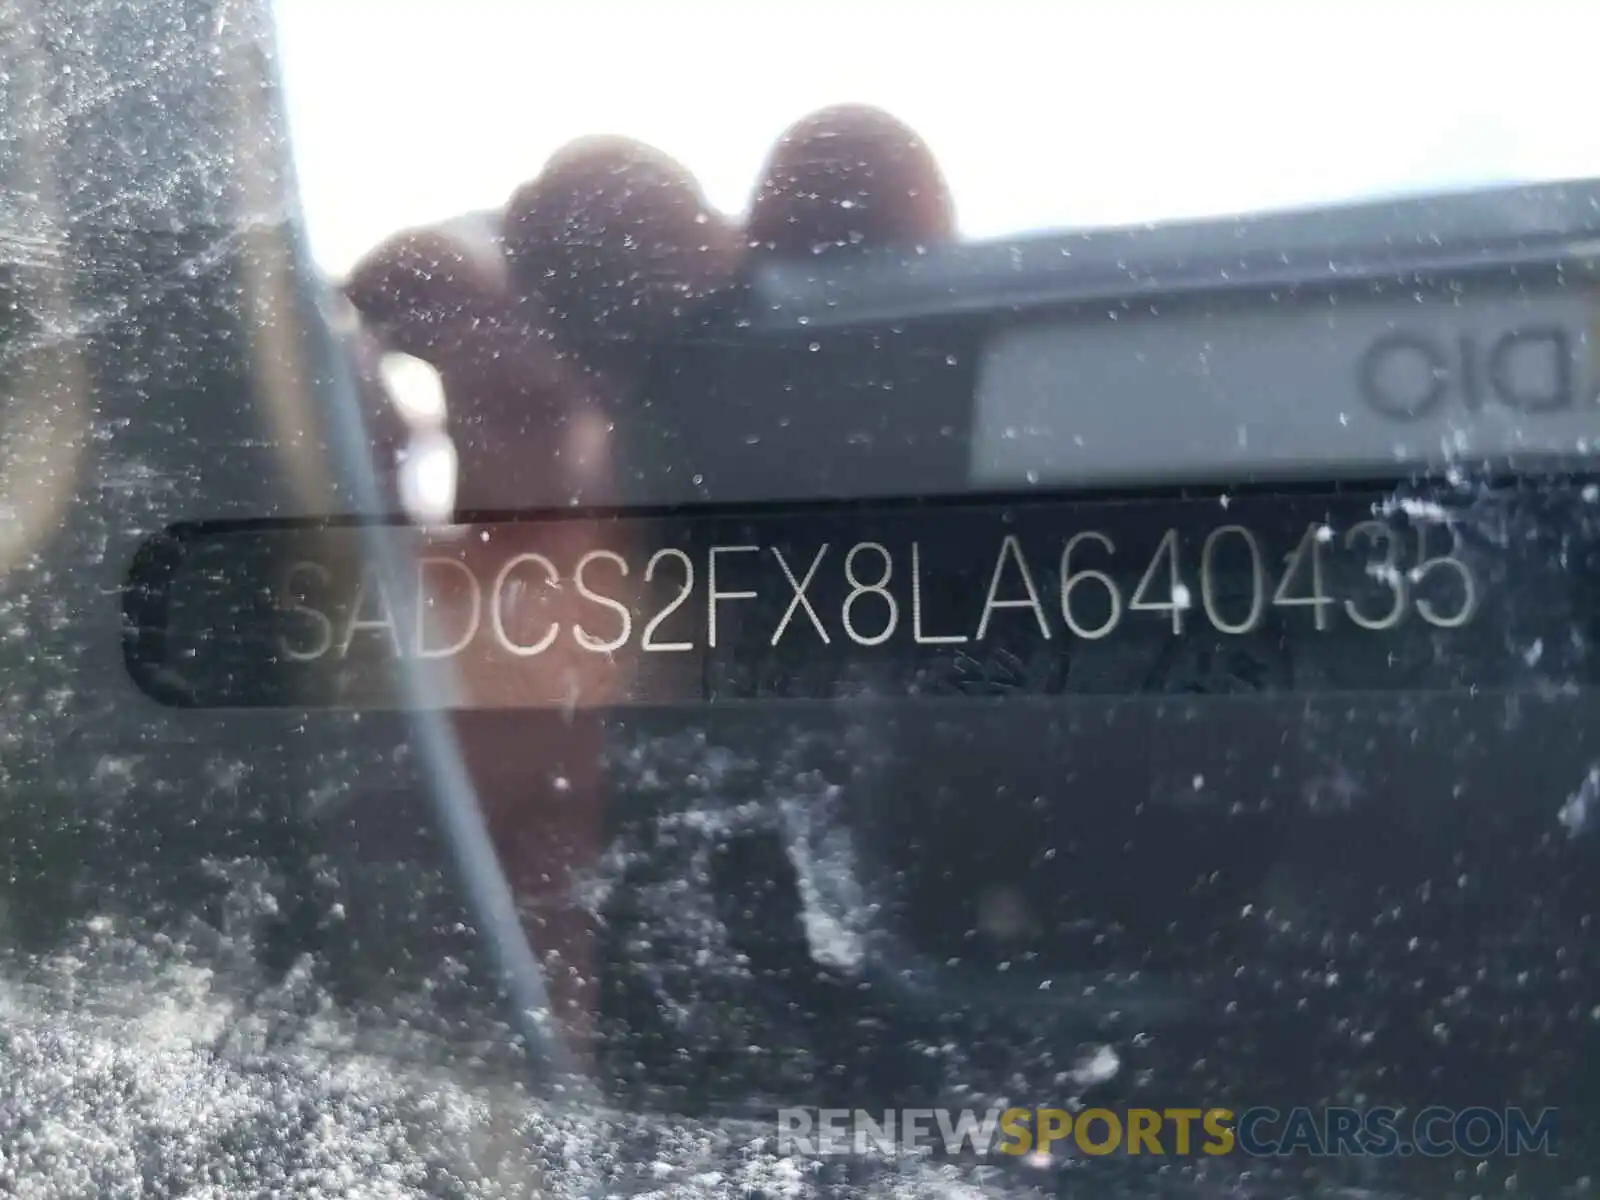 10 Photograph of a damaged car SADCS2FX8LA640435 JAGUAR F-PACE 2020